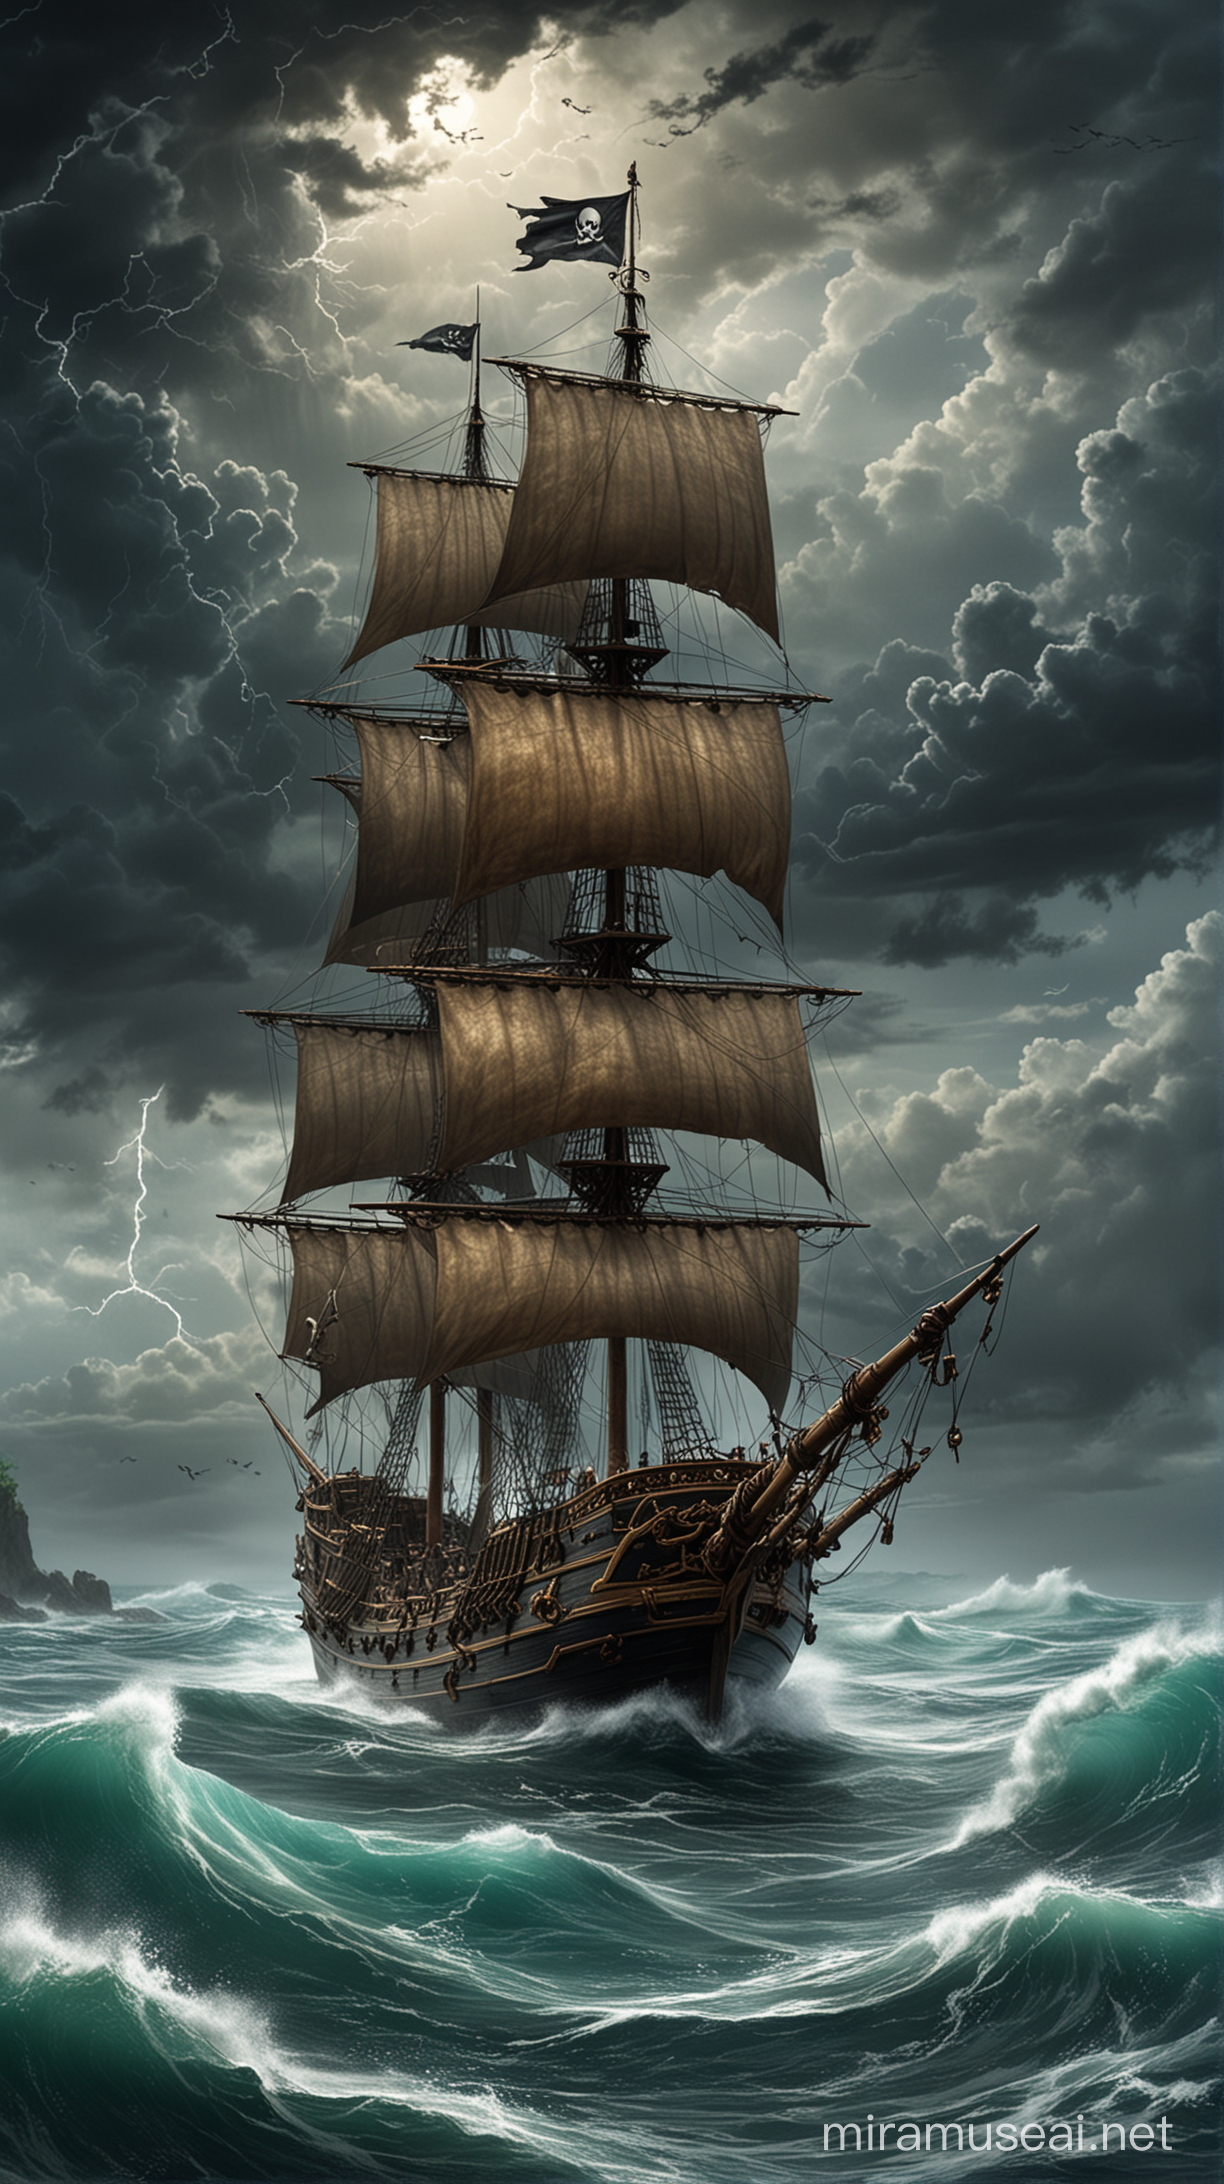 Cheng I Saos Pirate Ship Sailing Amidst Stormy Caribbean Seas